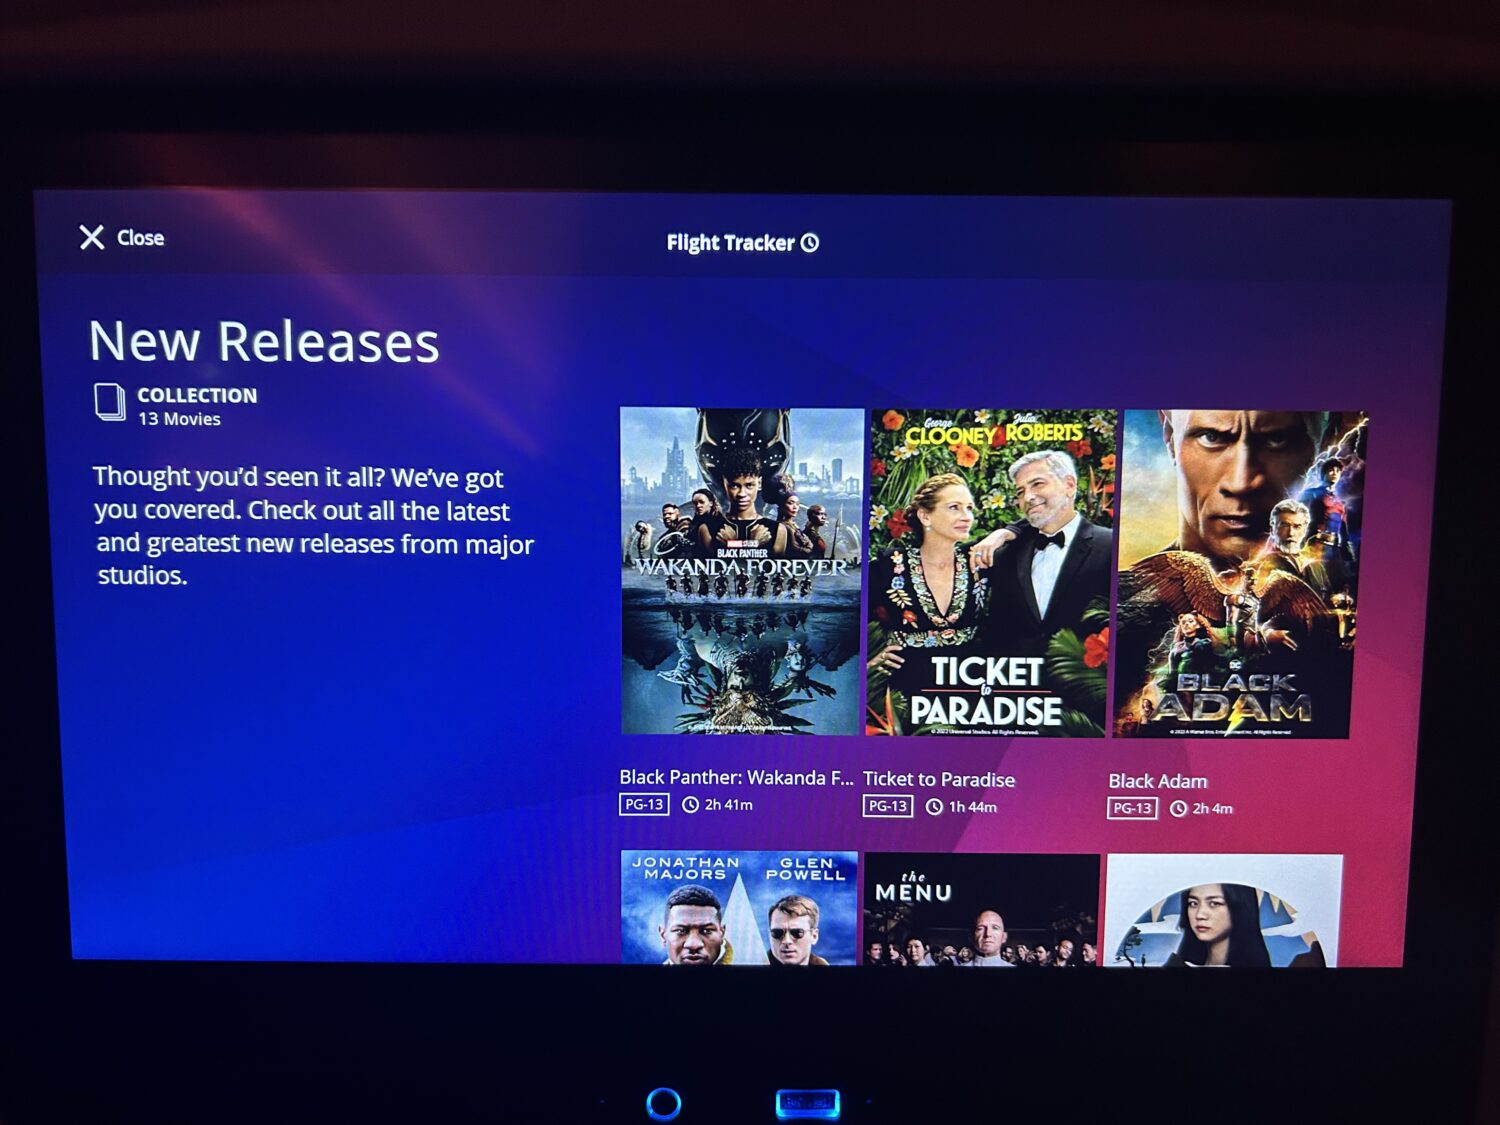 Delta Premium Select movie options